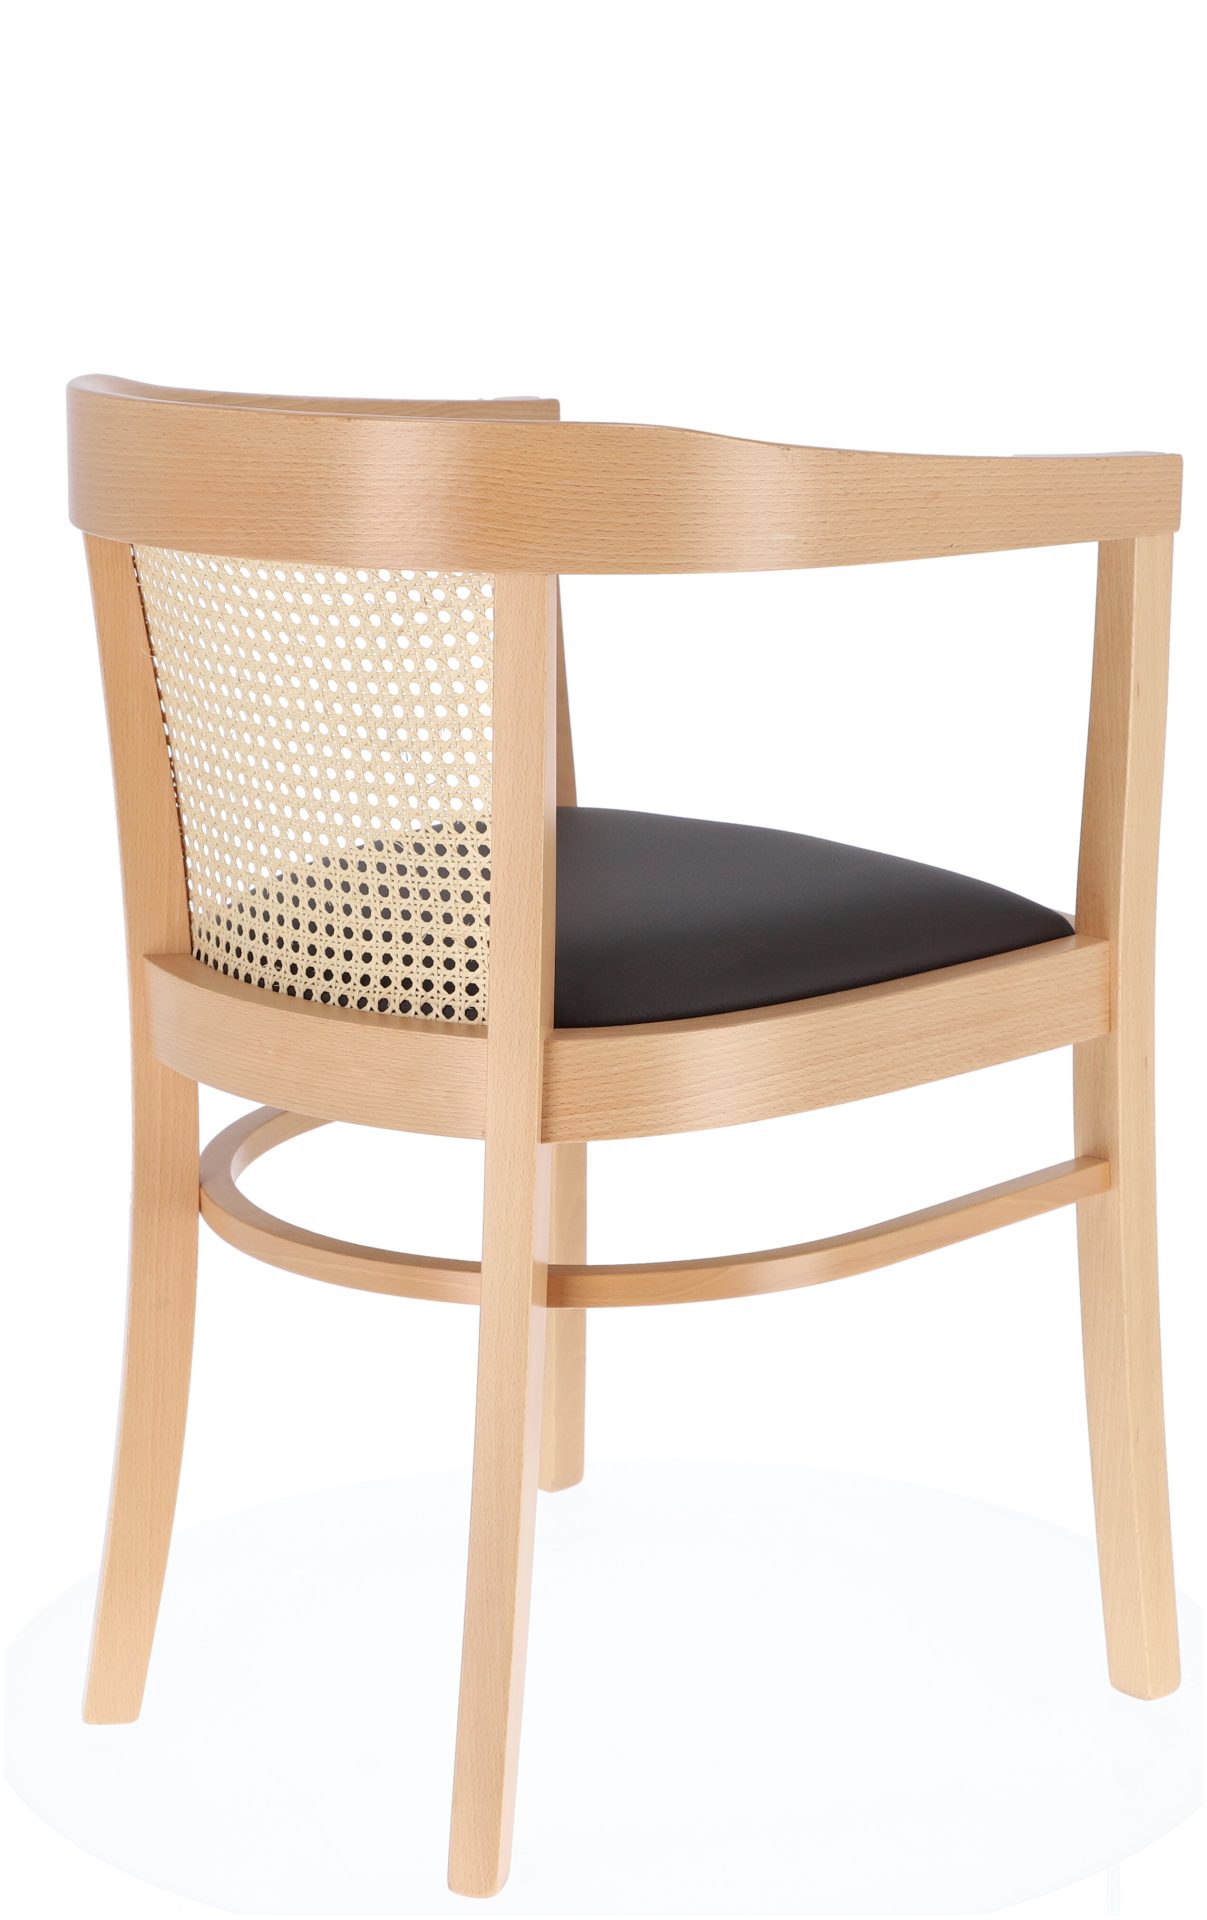 Der Stuhl Charles Cane besitzt ein schlichtes Design. Gefertigt wurde er aus Buchenholz und ist ein Produkt der Marke Jan Kurtz. Die Sitzfläche ist aus Leder.